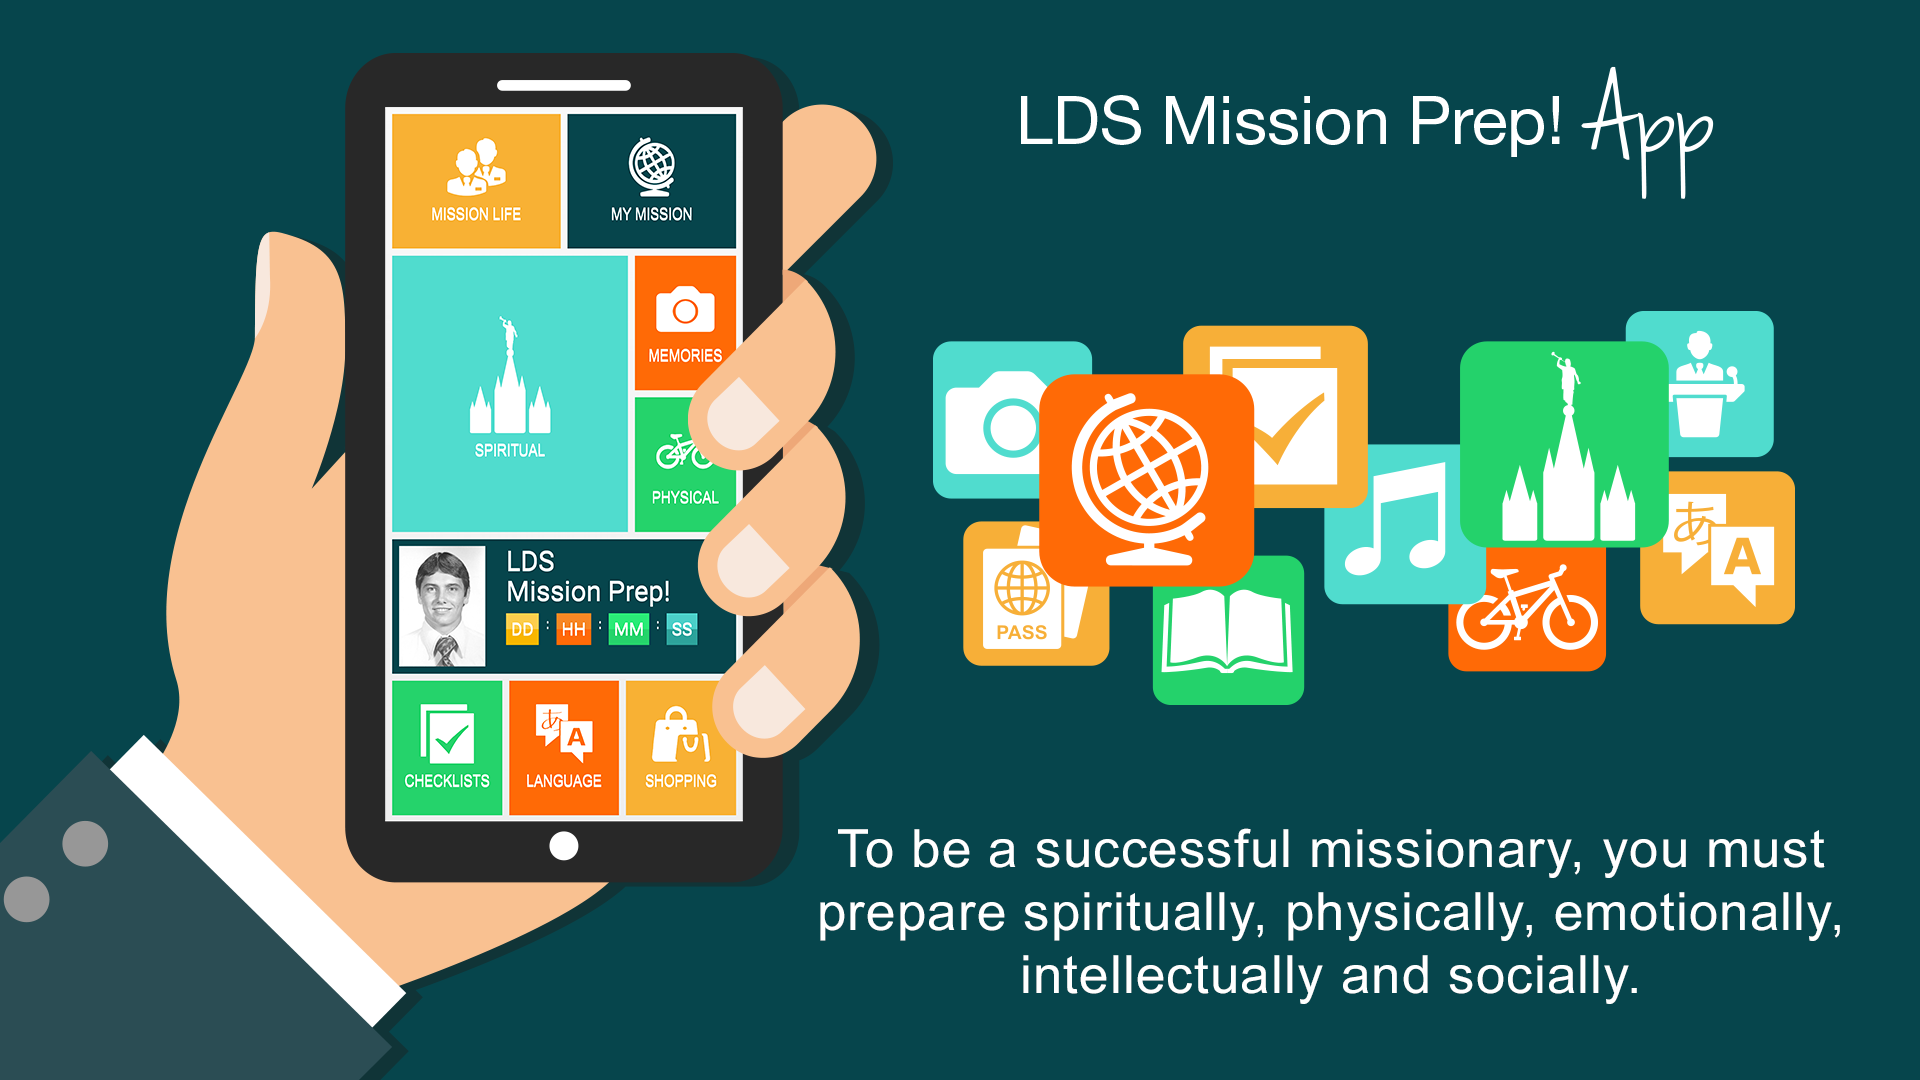 LDS Mission Prep